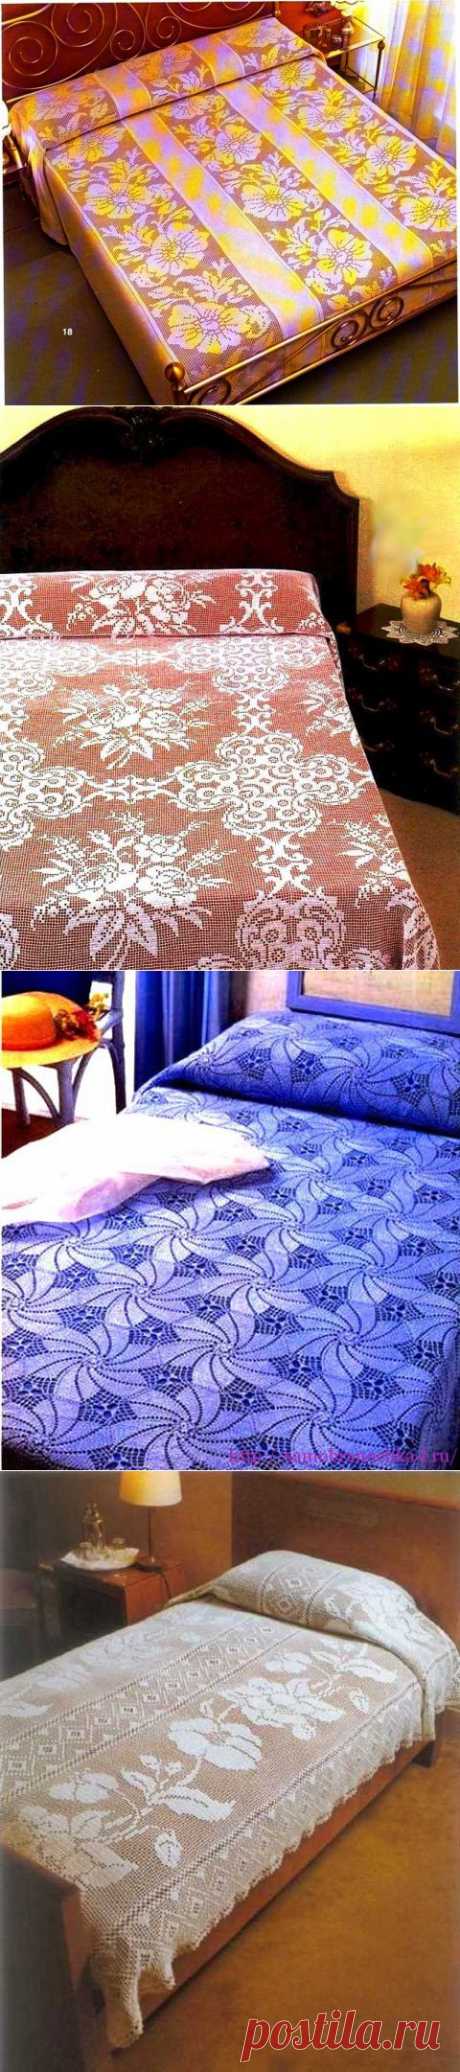 Вязание шикарного покрывала на кровать.